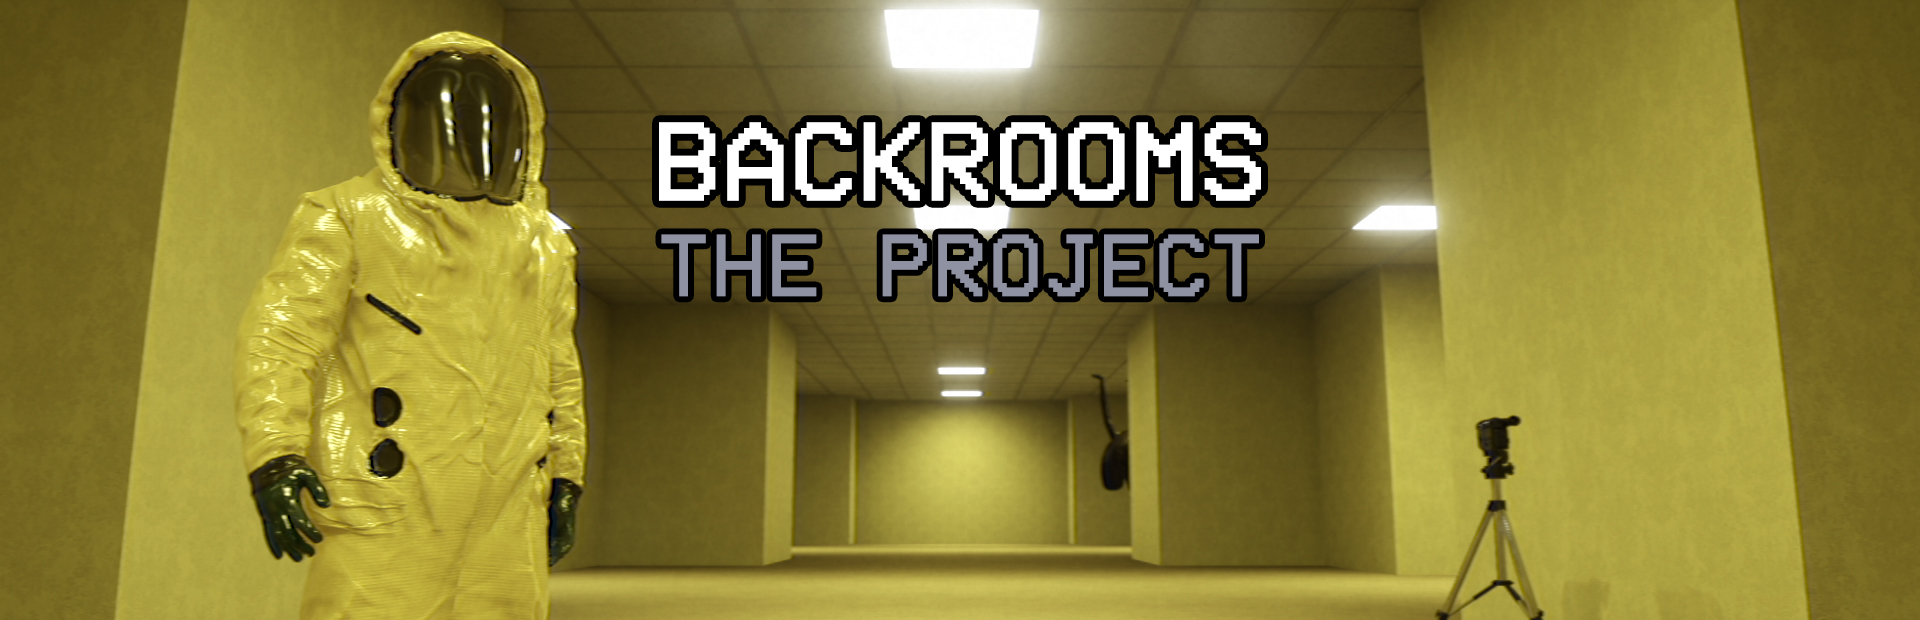 Backrooms - Trailer 